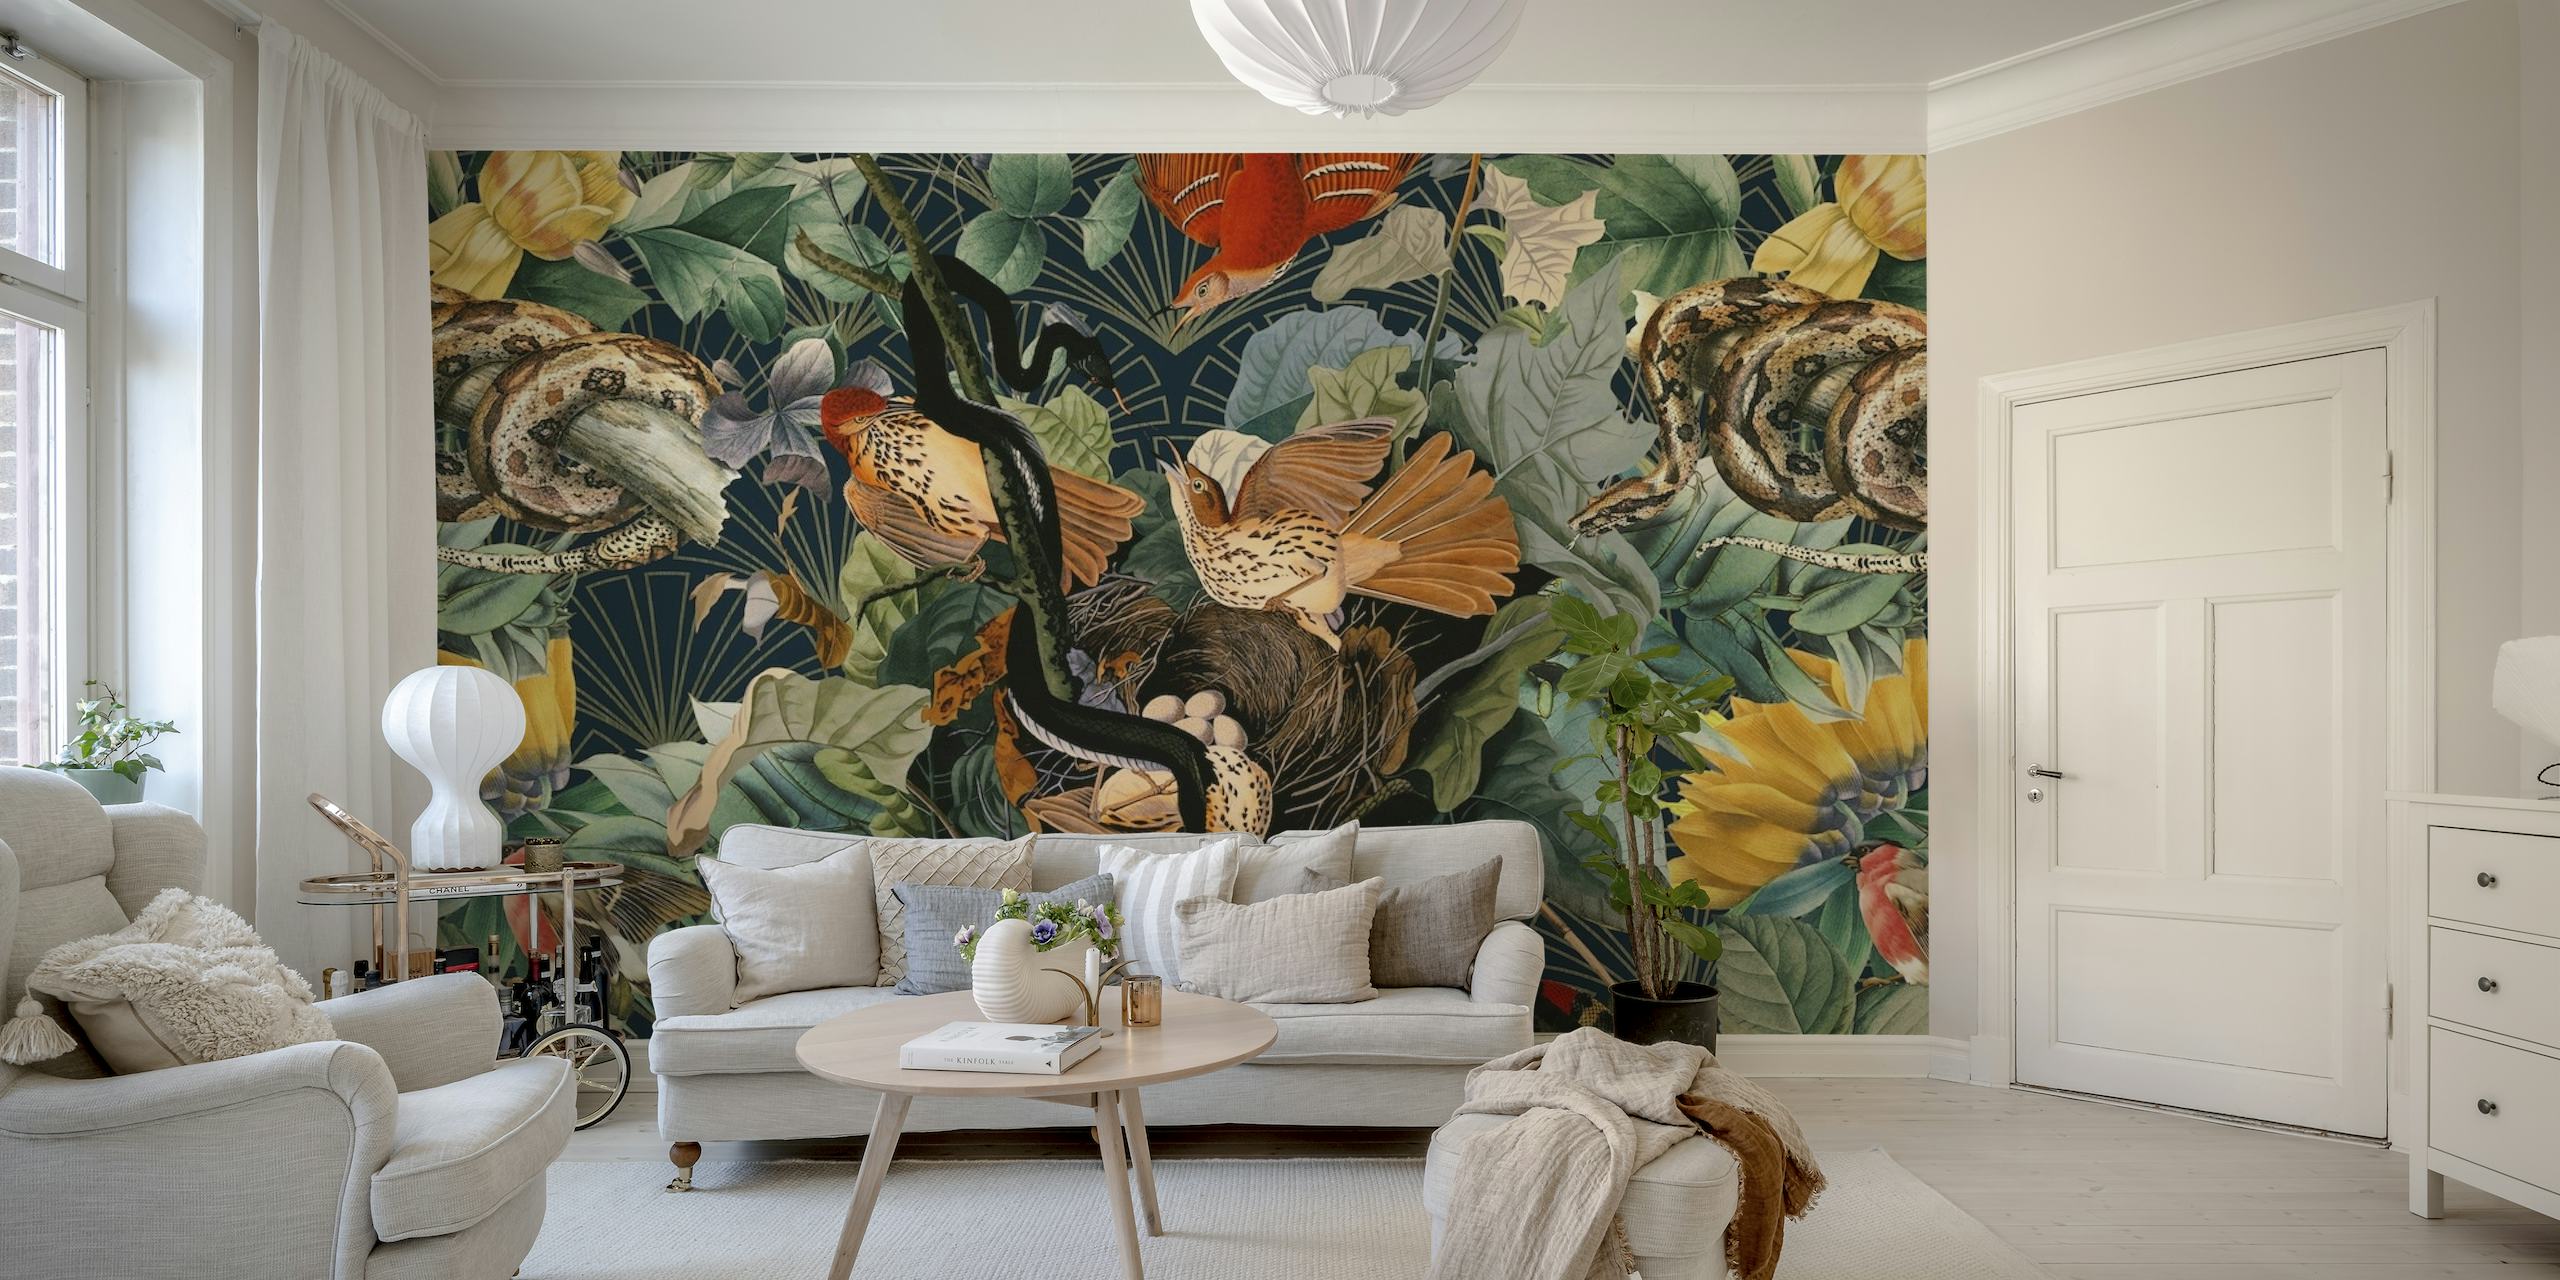 Mural de parede vibrante com pássaros exóticos e cobras em meio a uma vegetação exuberante